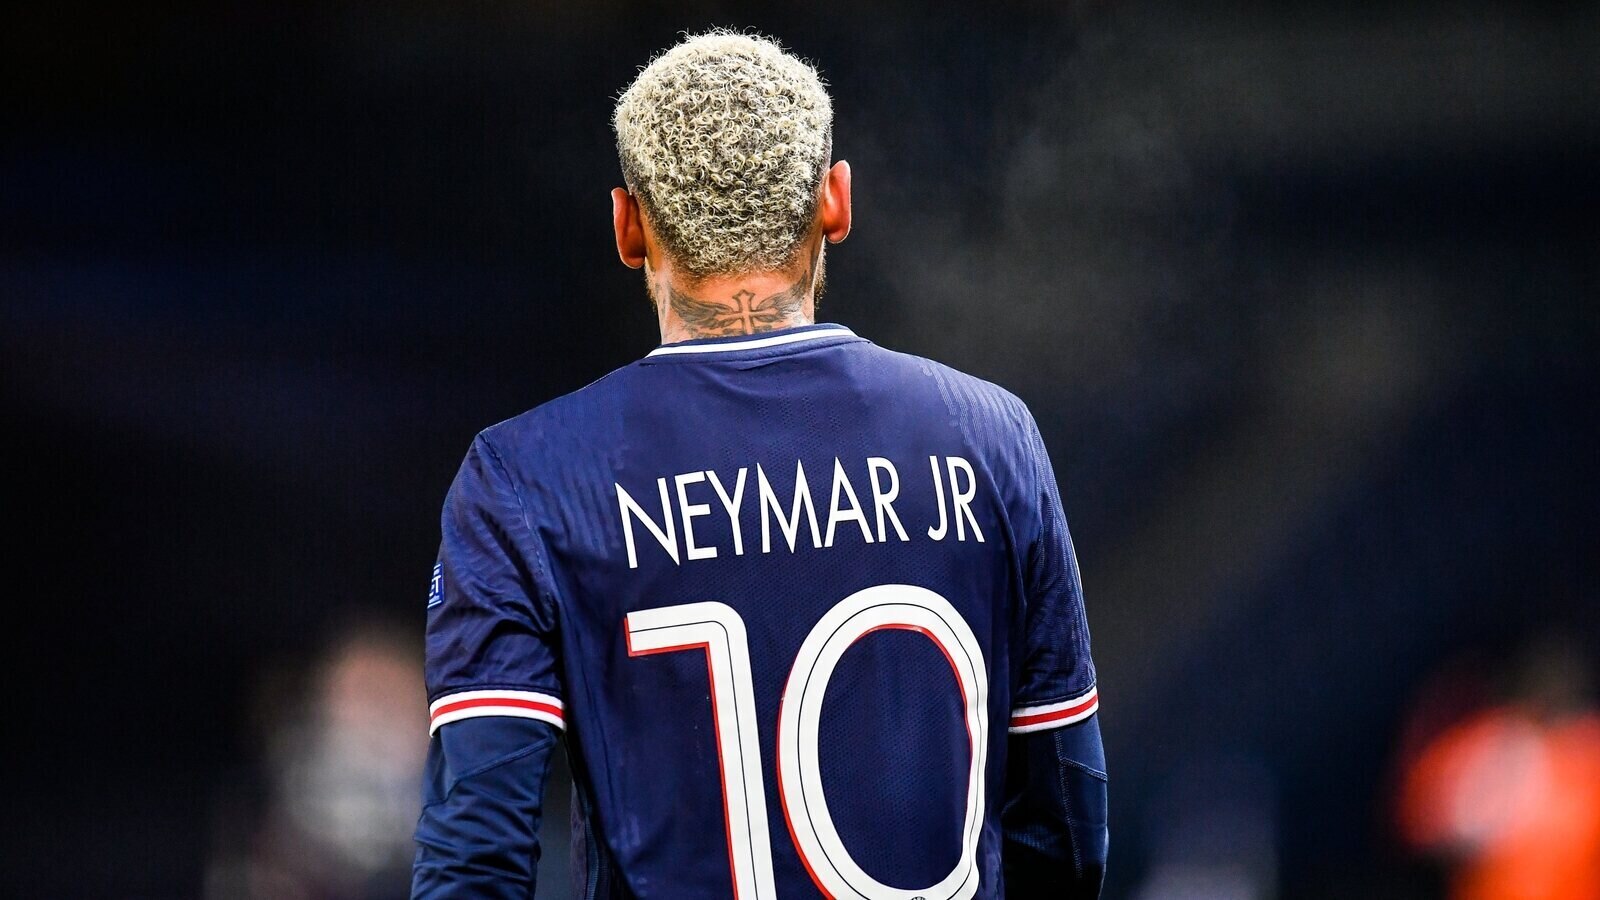 PSG x Lyon AO VIVO: Neymar encara Paquetá em jogo da Ligue 1